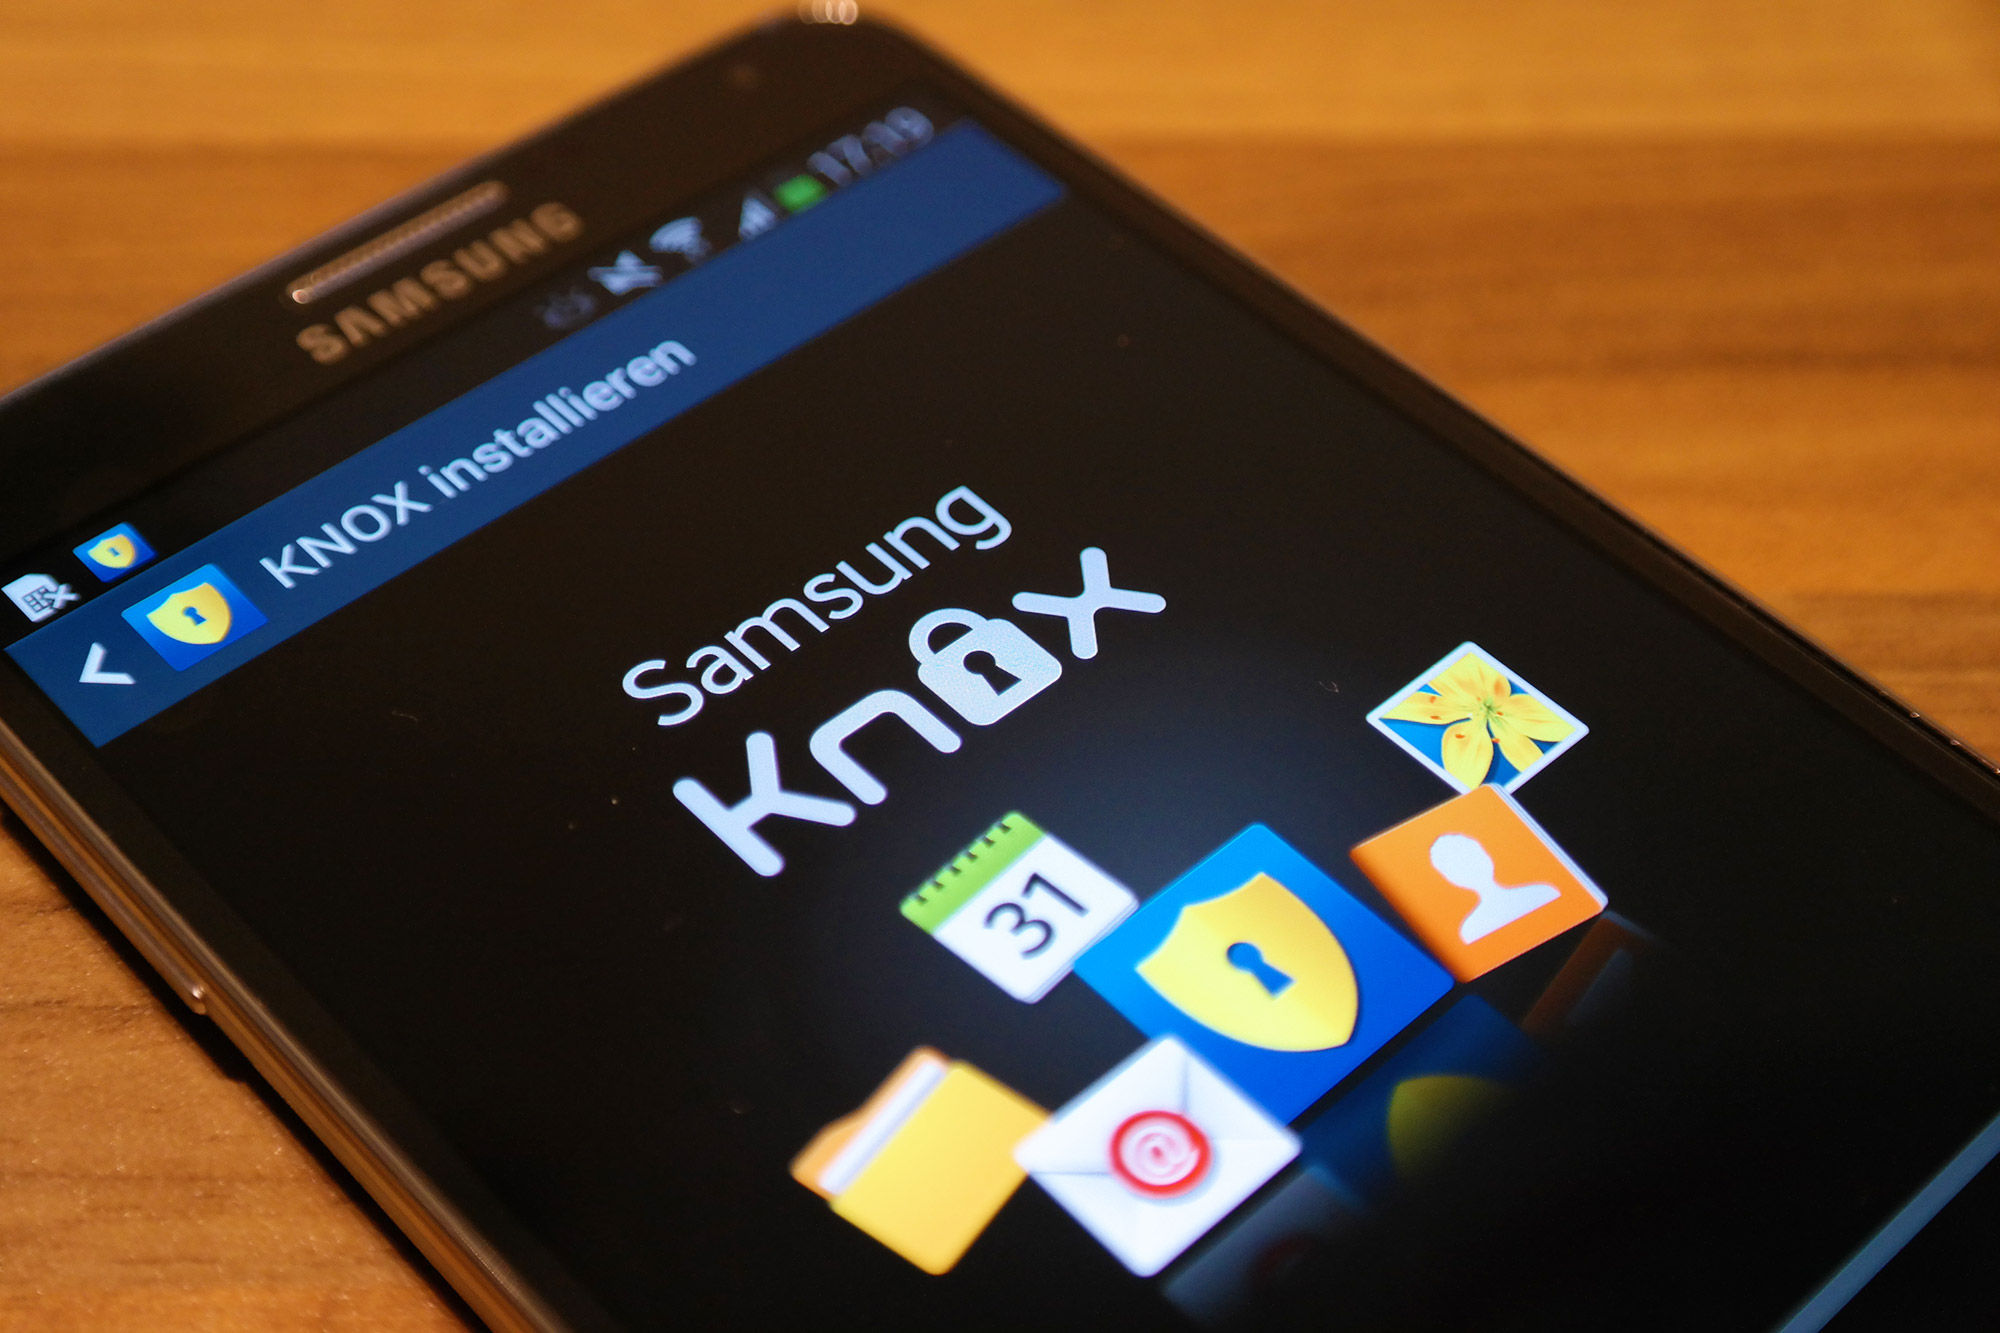 A Samsung KNOX a legerősebb biztonsági platform